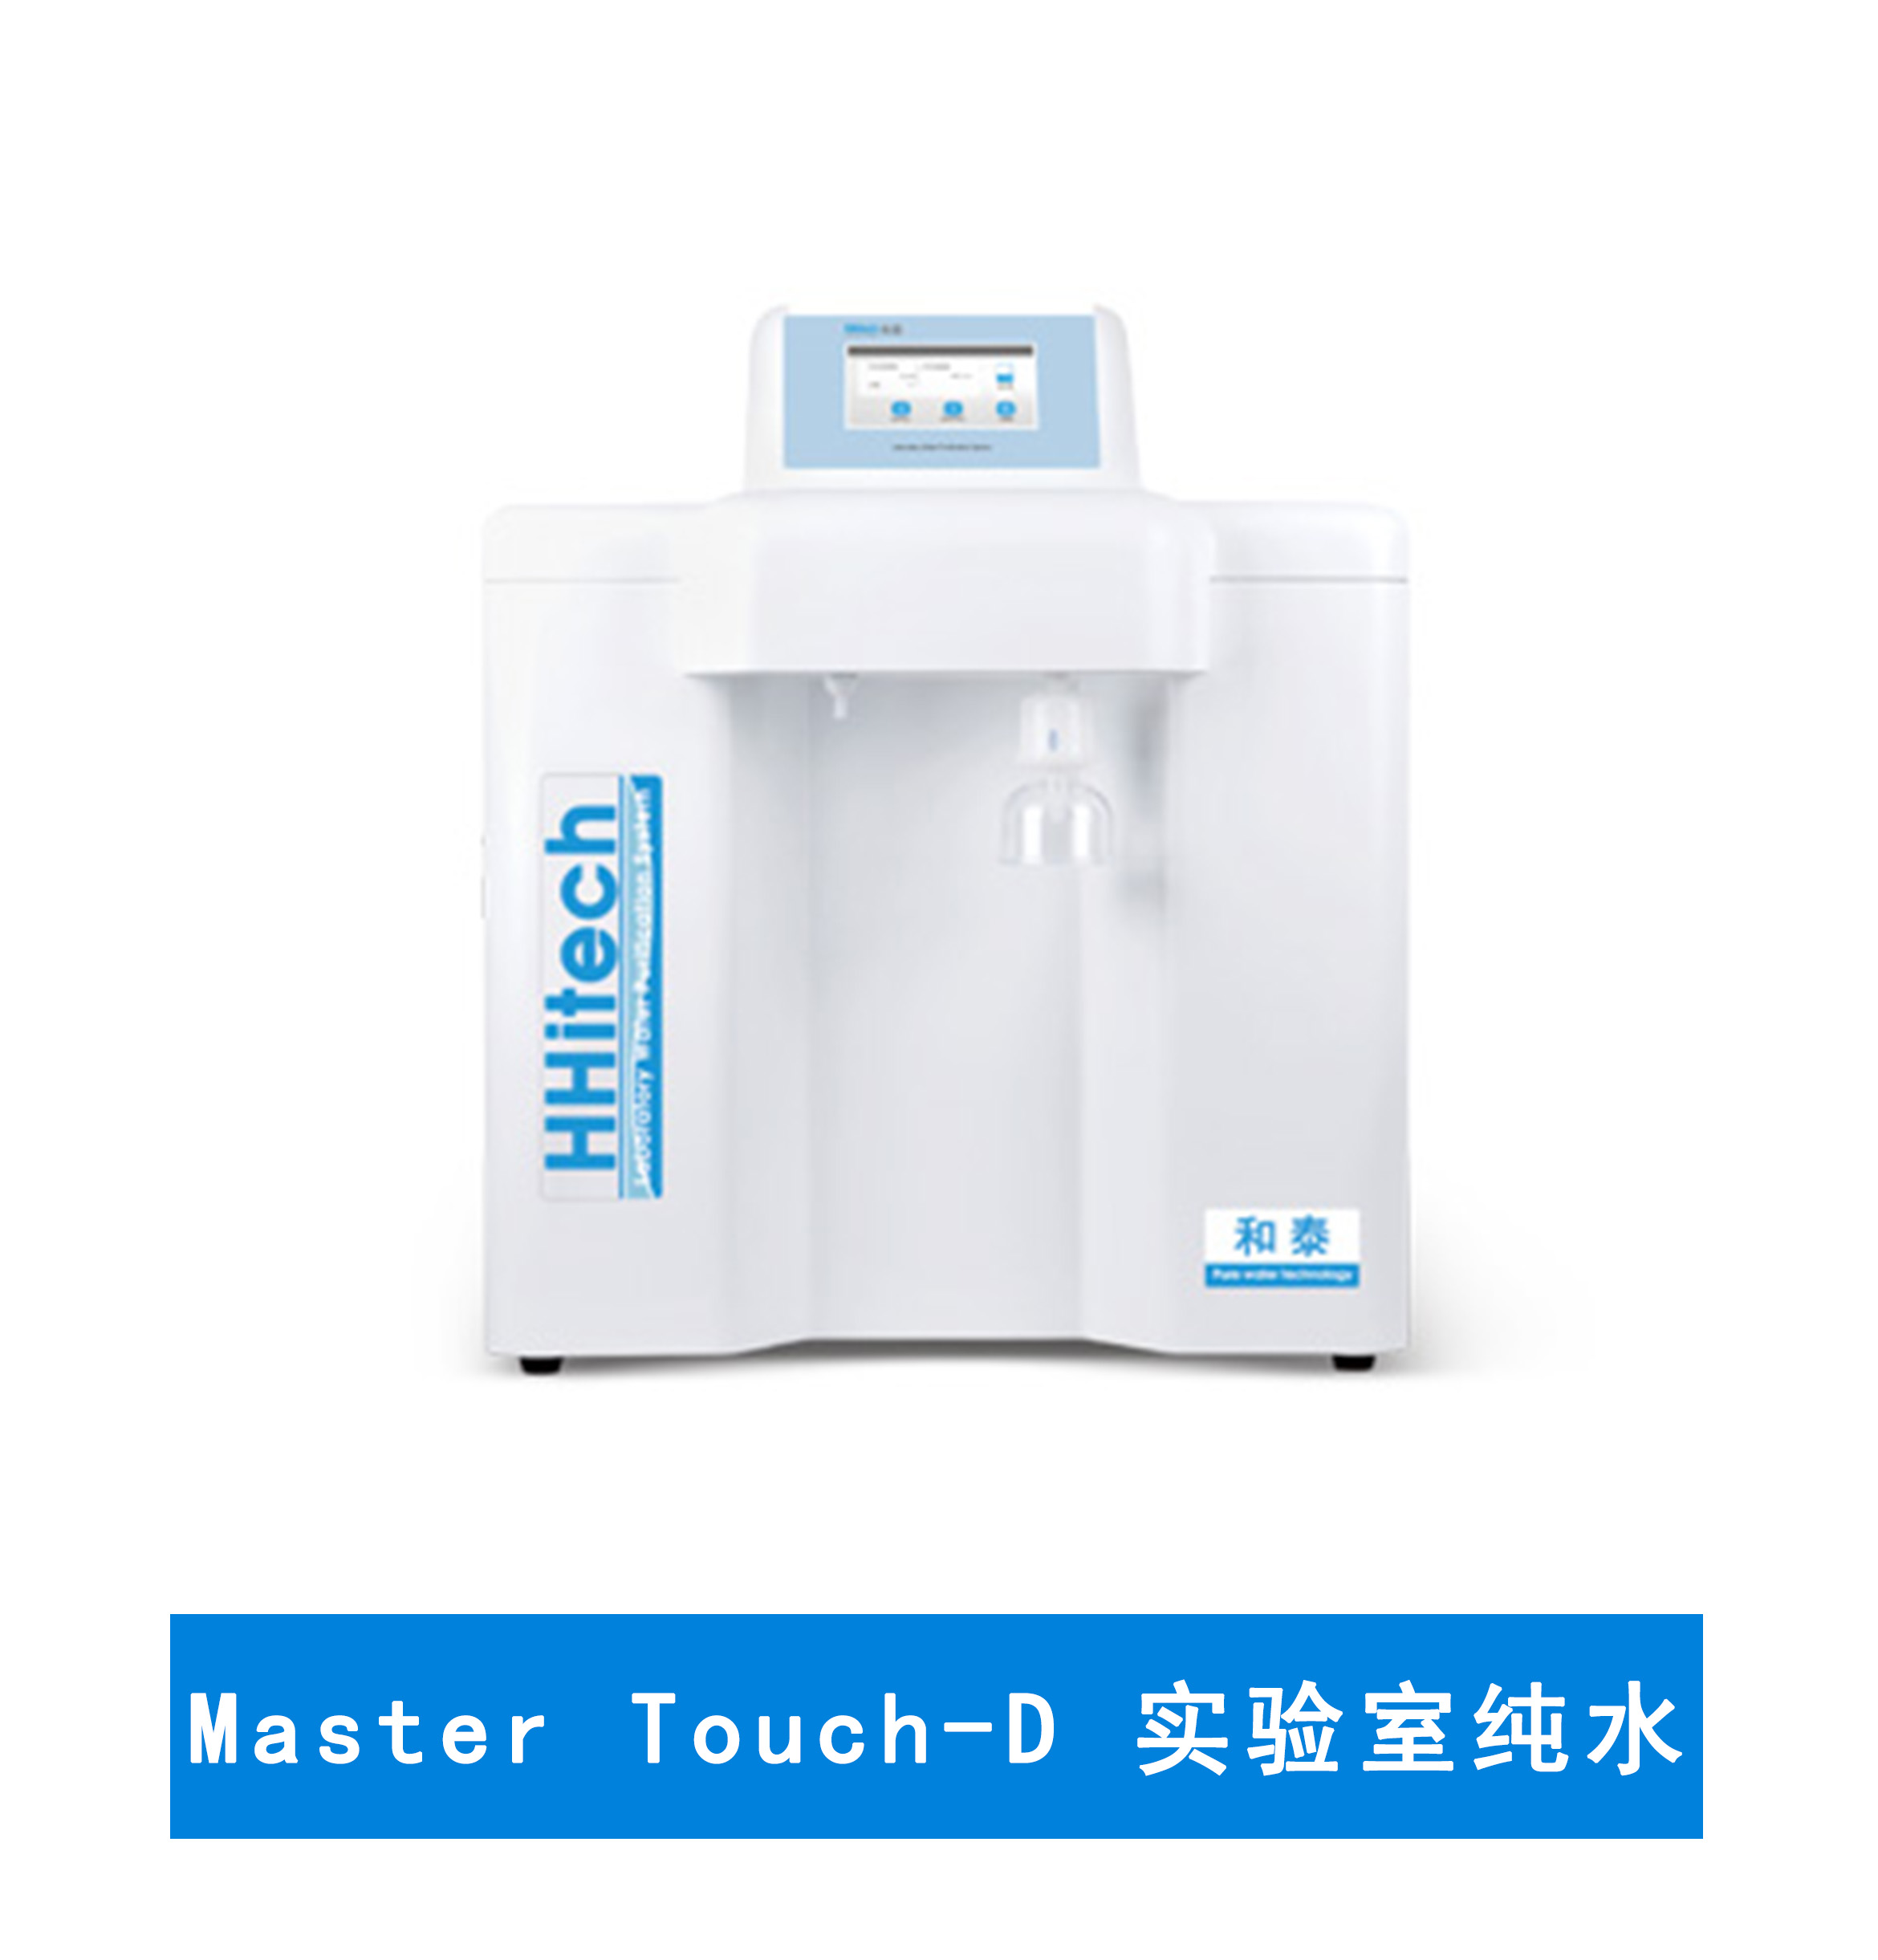 上海和泰 Master Touch-D超純水機